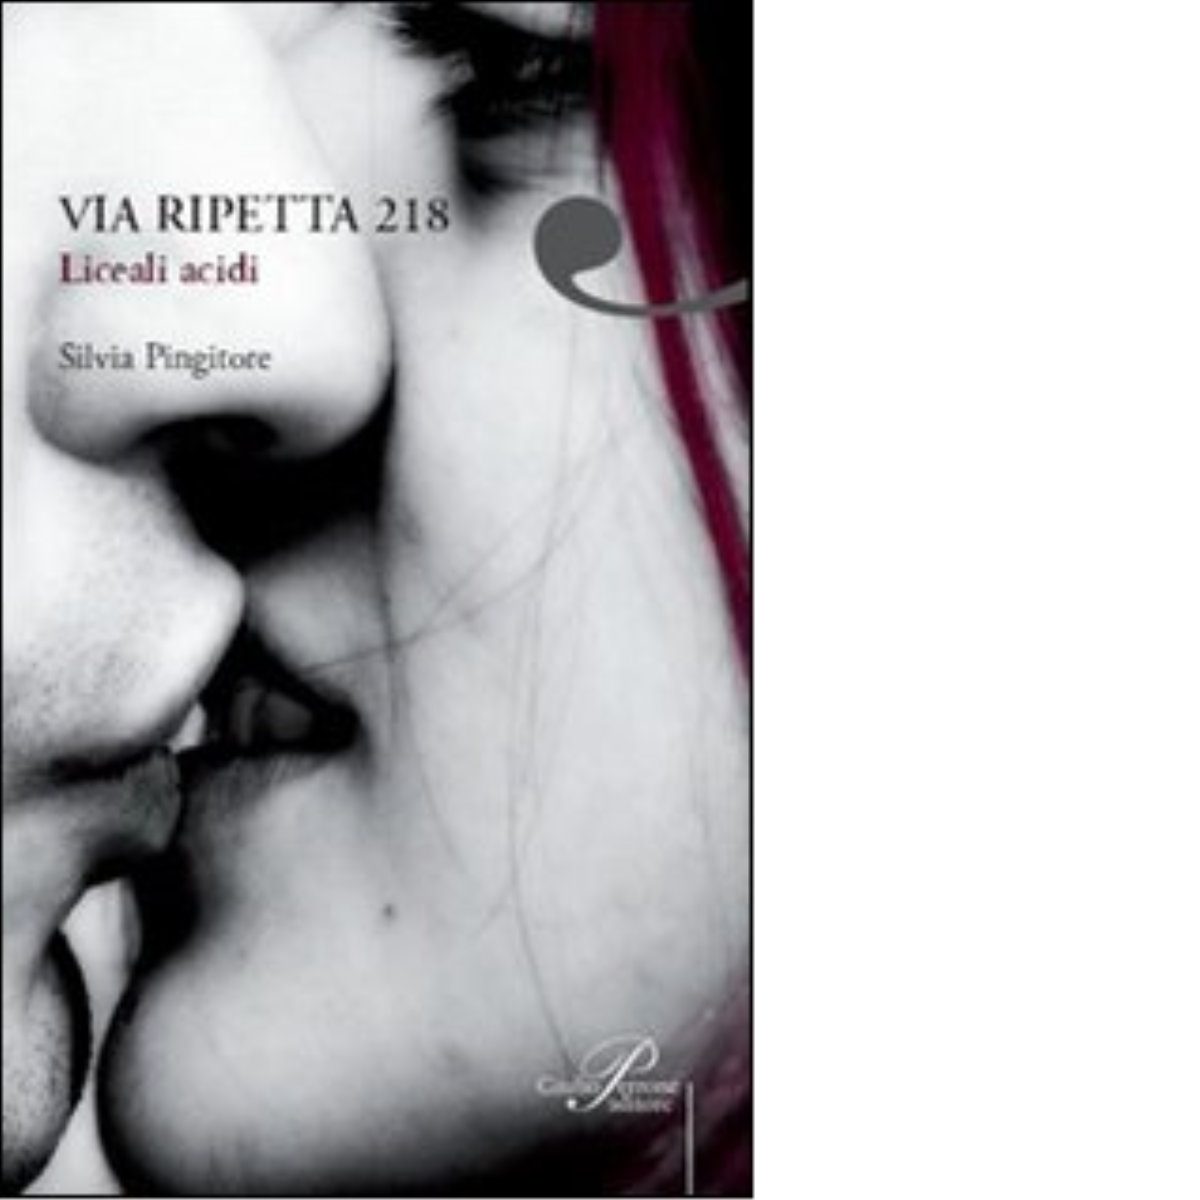 Via Ripetta, 218 - Pingitore Silvia - Perrone editore,2008